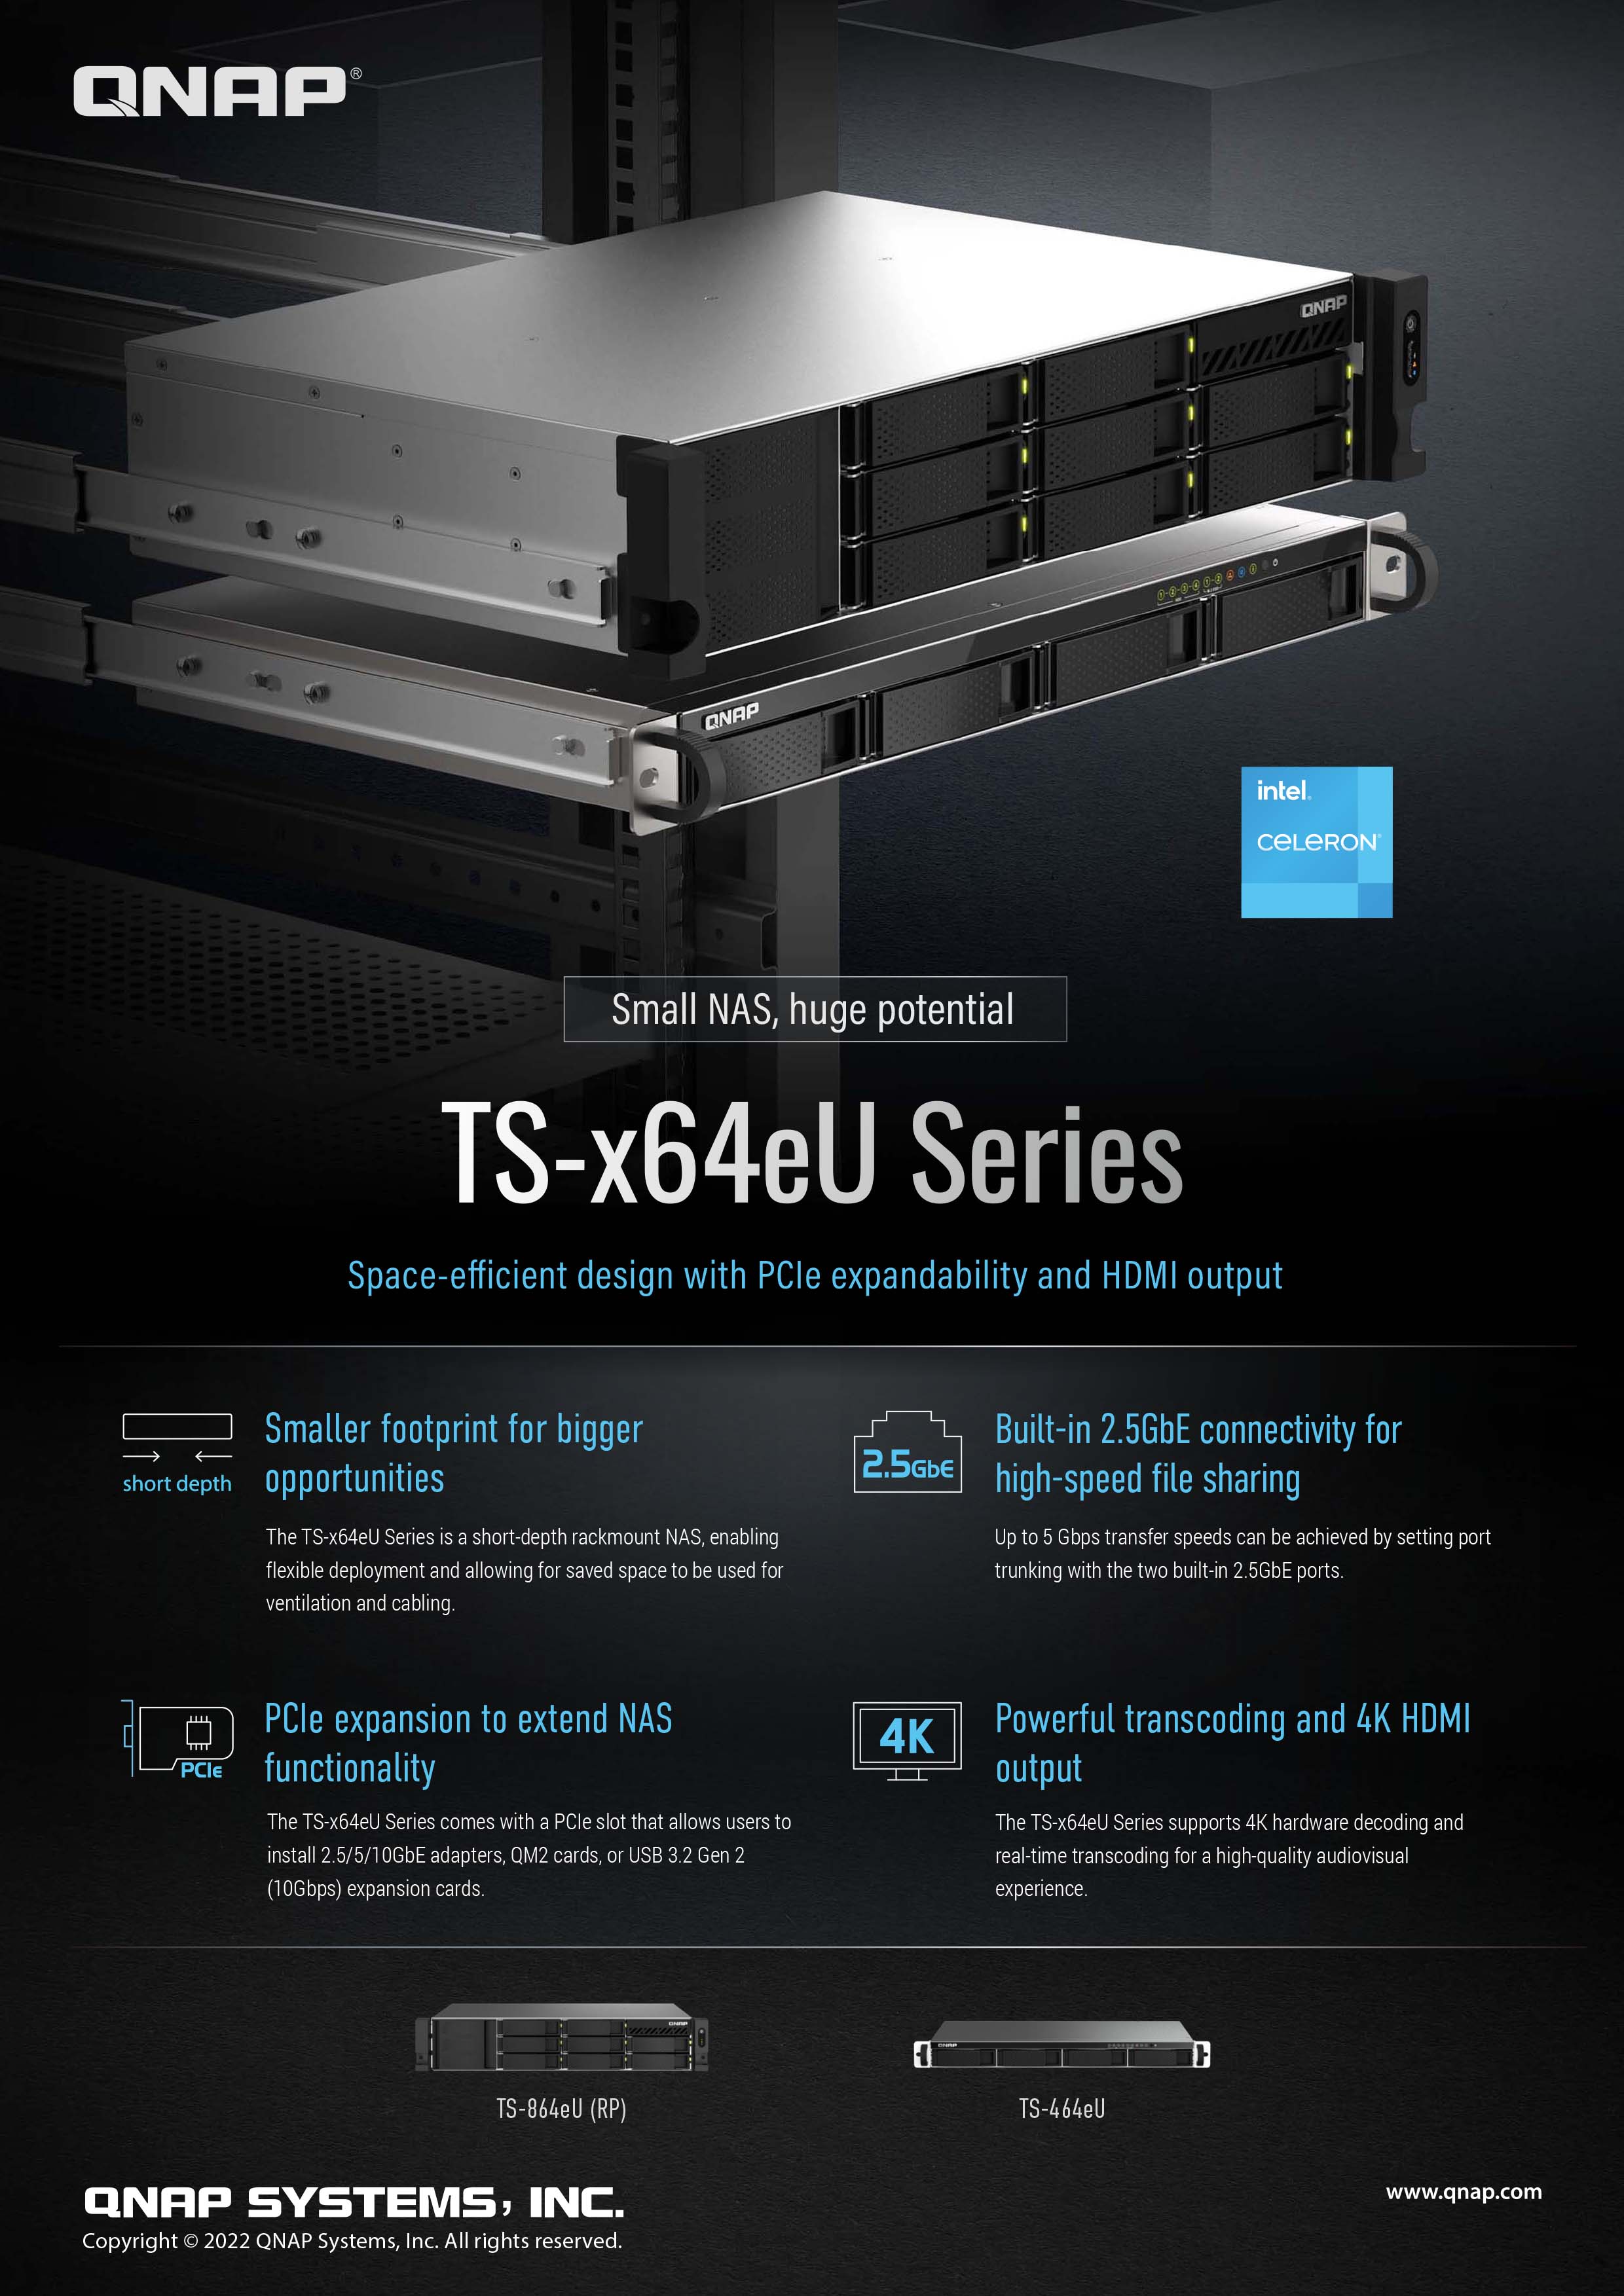 QNAP lanserar TS-x64eU: en serie korta, rackmonterade NAS-enheter med 2,5 GbE och fyrkärniga Intel-processorer